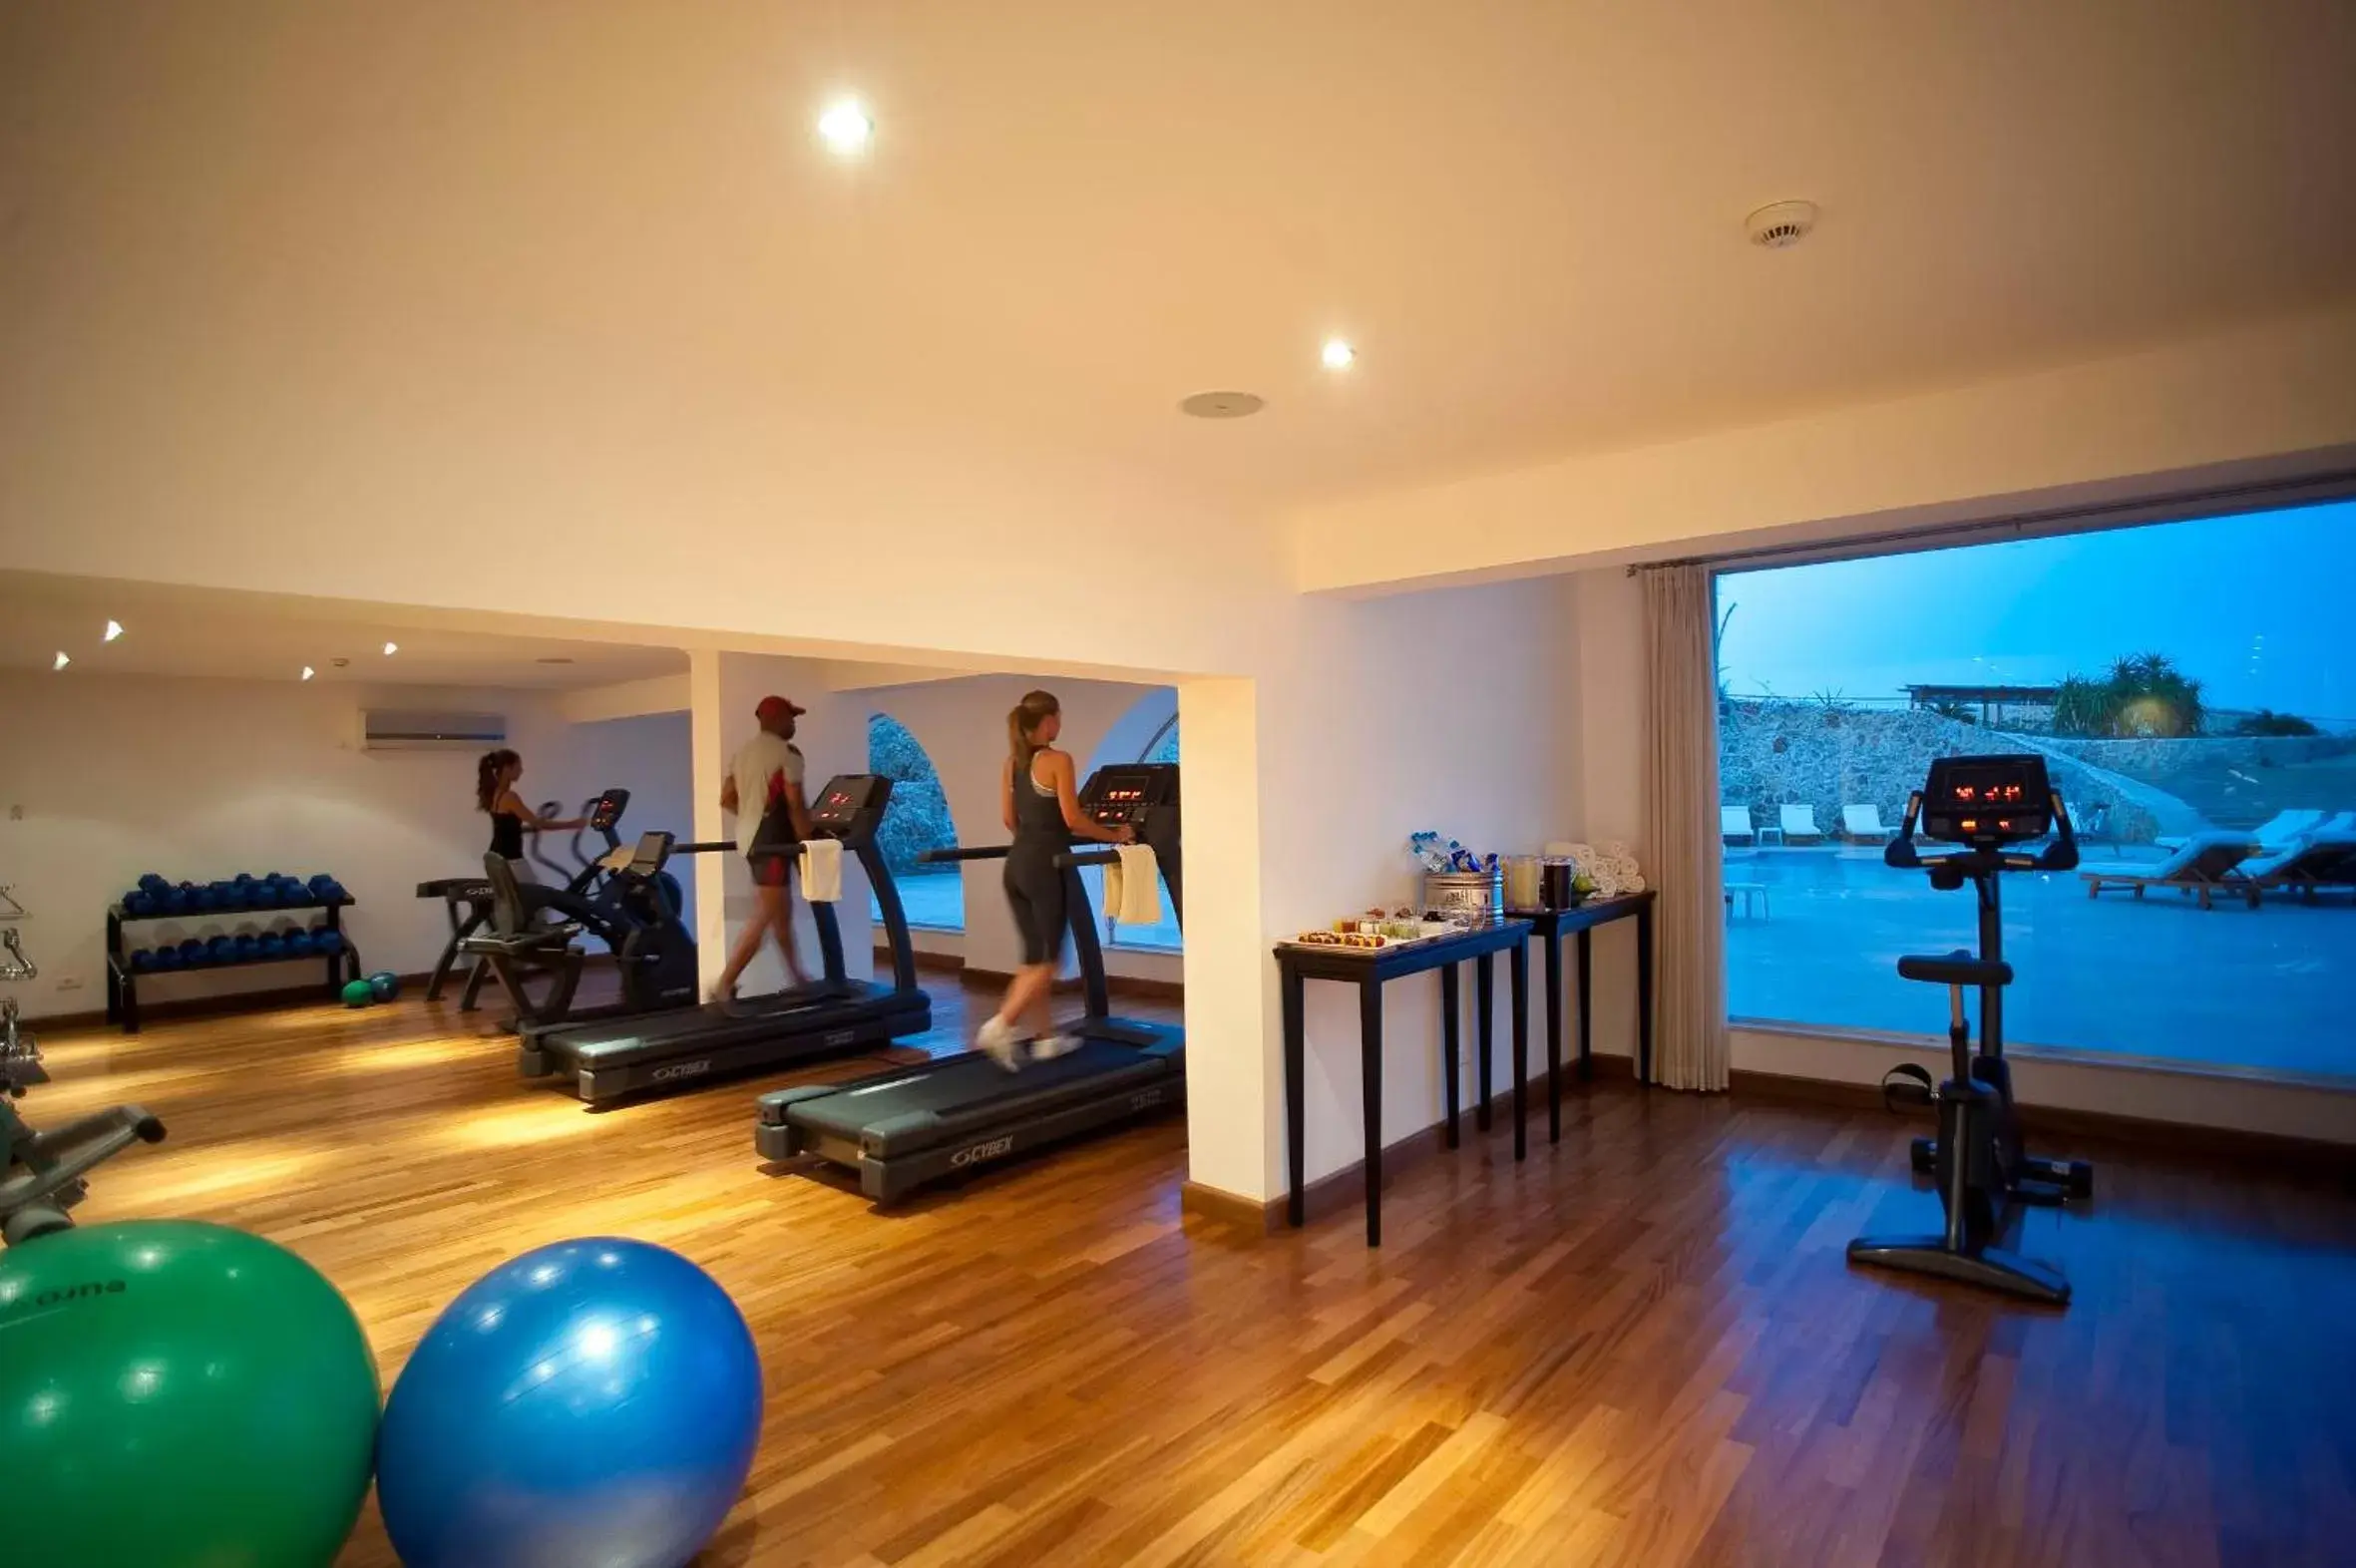 Fitness centre/facilities, Fitness Center/Facilities in Stella Di Mare Beach Hotel & Spa